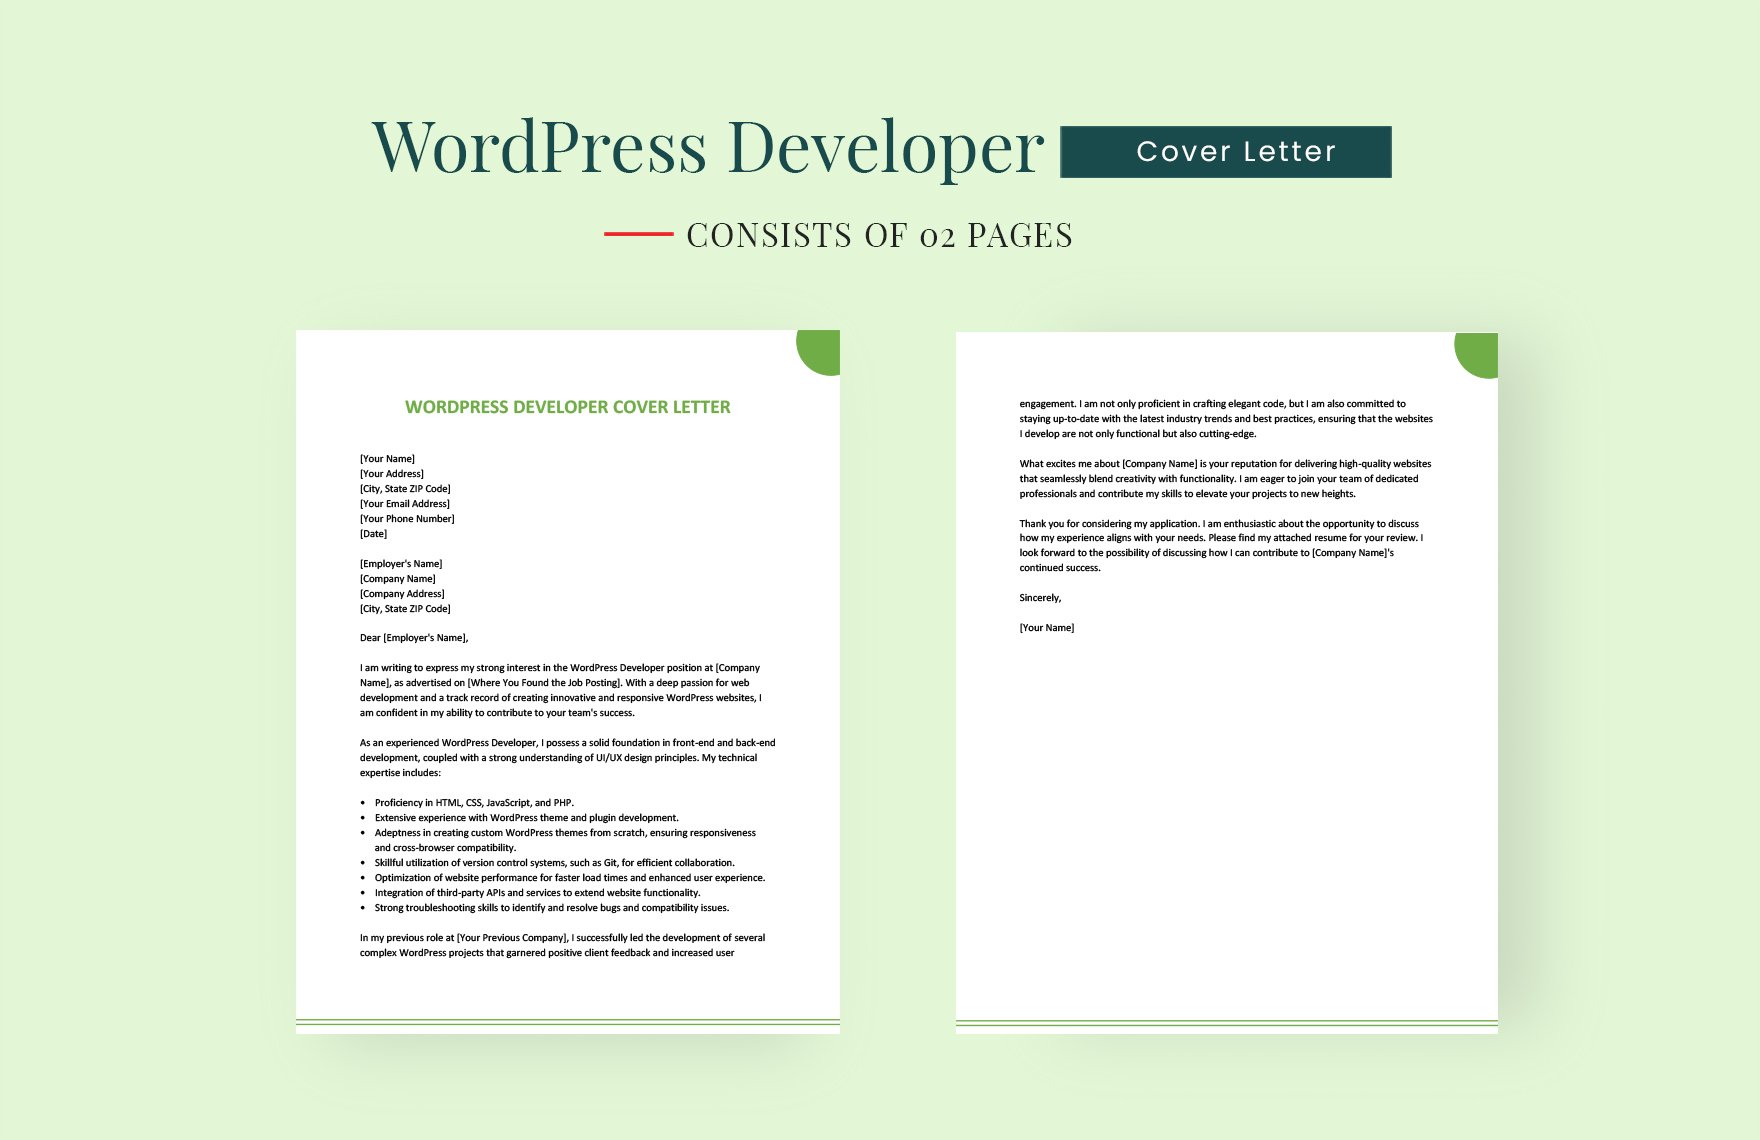 Wordpress Developer Cover Letter in Word, Google Docs